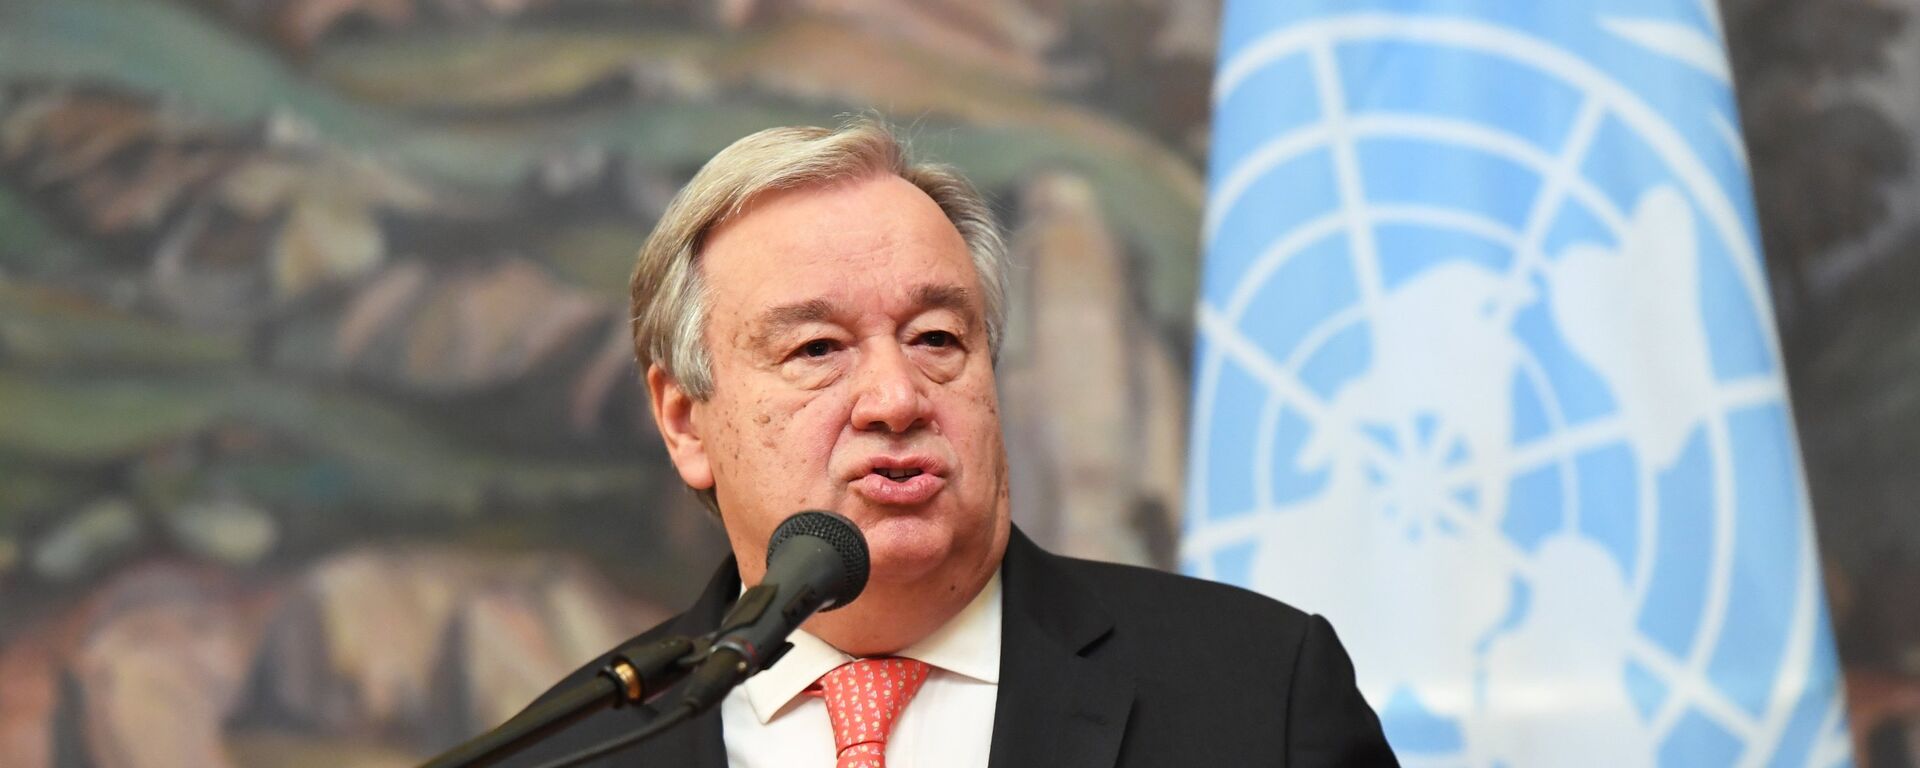 Antonio Guterres, secretario general de la ONU - Sputnik Mundo, 1920, 23.01.2020